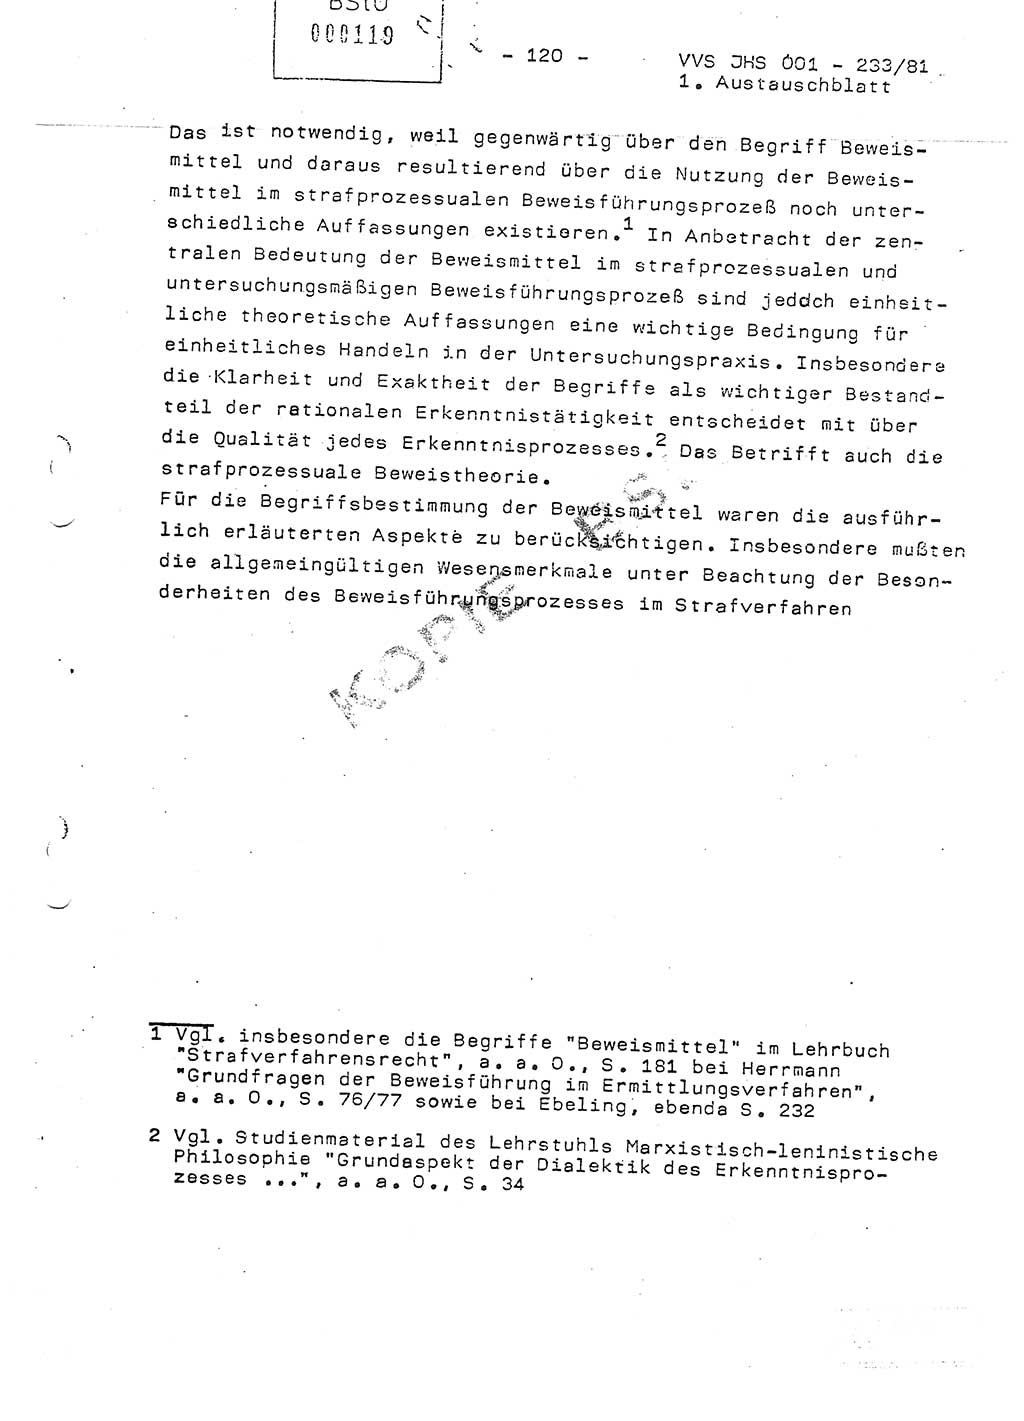 Dissertation Oberstleutnant Horst Zank (JHS), Oberstleutnant Dr. Karl-Heinz Knoblauch (JHS), Oberstleutnant Gustav-Adolf Kowalewski (HA Ⅸ), Oberstleutnant Wolfgang Plötner (HA Ⅸ), Ministerium für Staatssicherheit (MfS) [Deutsche Demokratische Republik (DDR)], Juristische Hochschule (JHS), Vertrauliche Verschlußsache (VVS) o001-233/81, Potsdam 1981, Blatt 120 (Diss. MfS DDR JHS VVS o001-233/81 1981, Bl. 120)